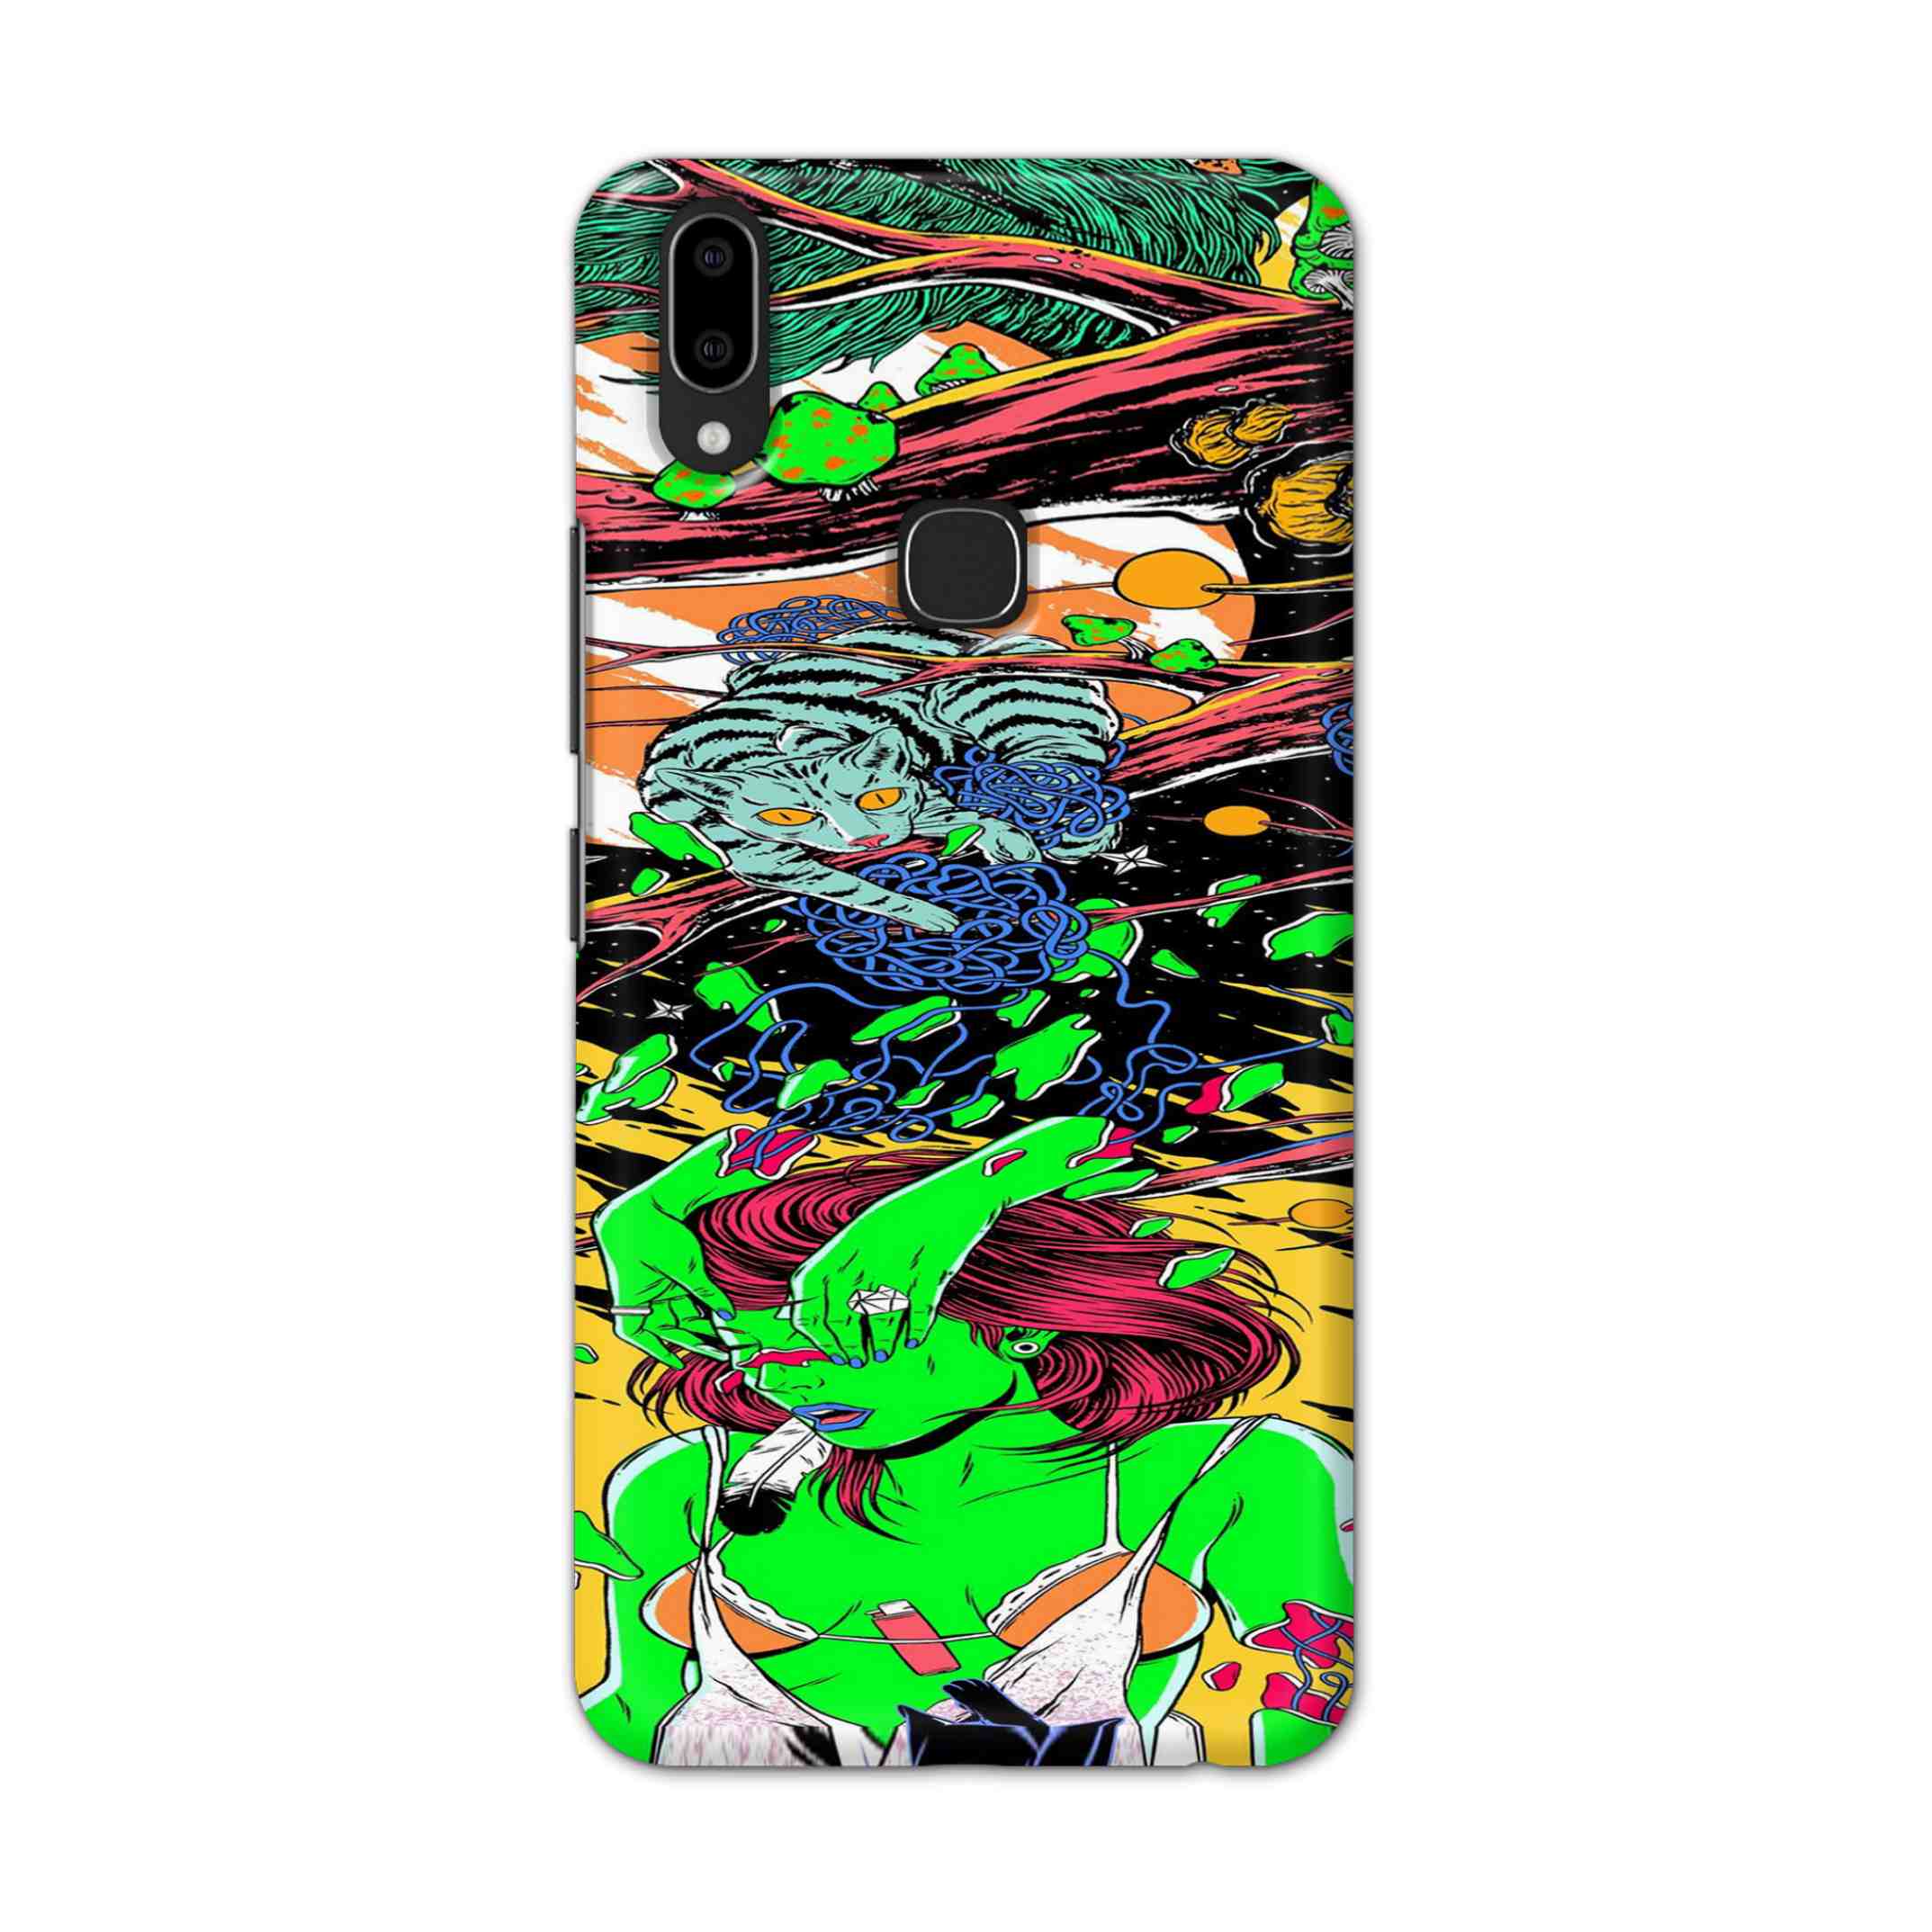 Buy Green Girl Art Hard Back Mobile Phone Case Cover For Vivo V9 / V9 Youth Online